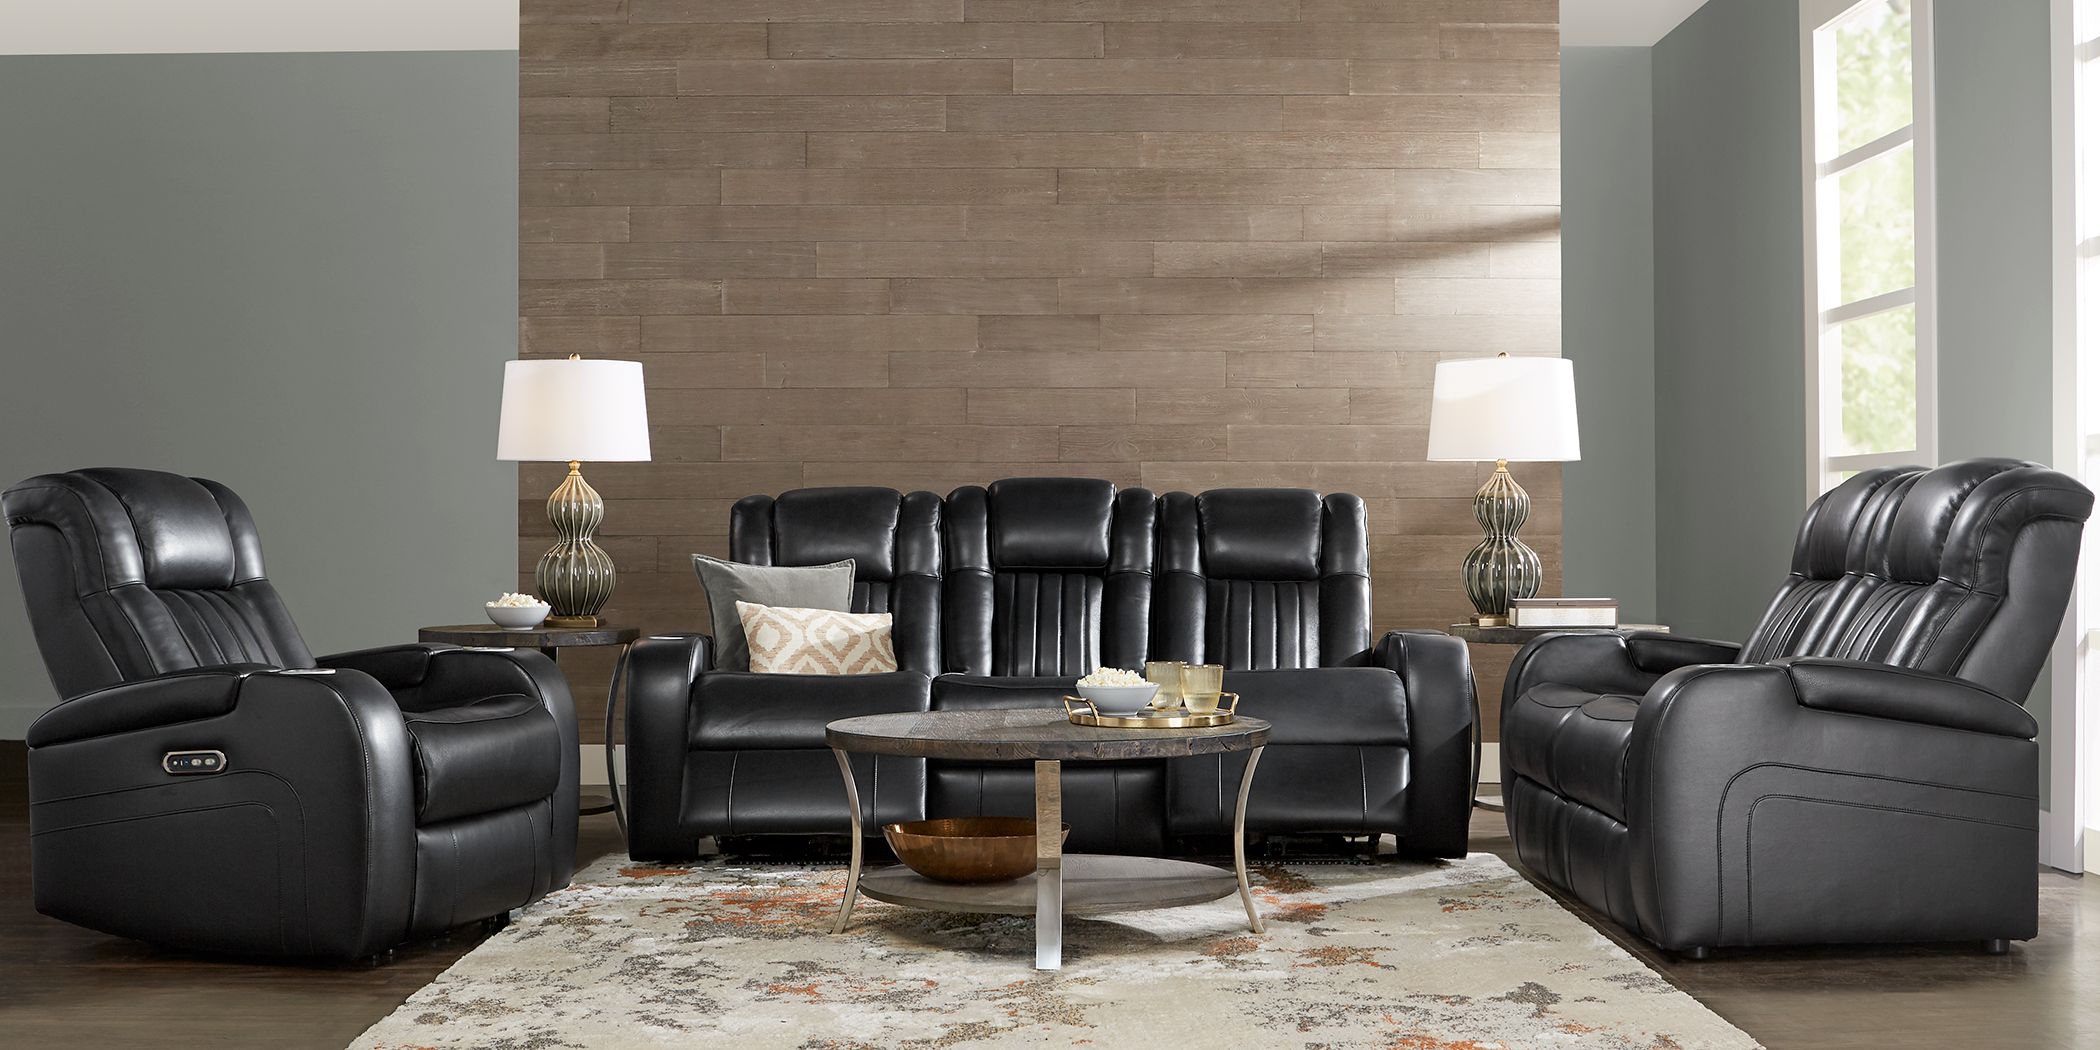 Black Leather Living Room Sets Sofas, Real Leather Living Room Furniture Sets